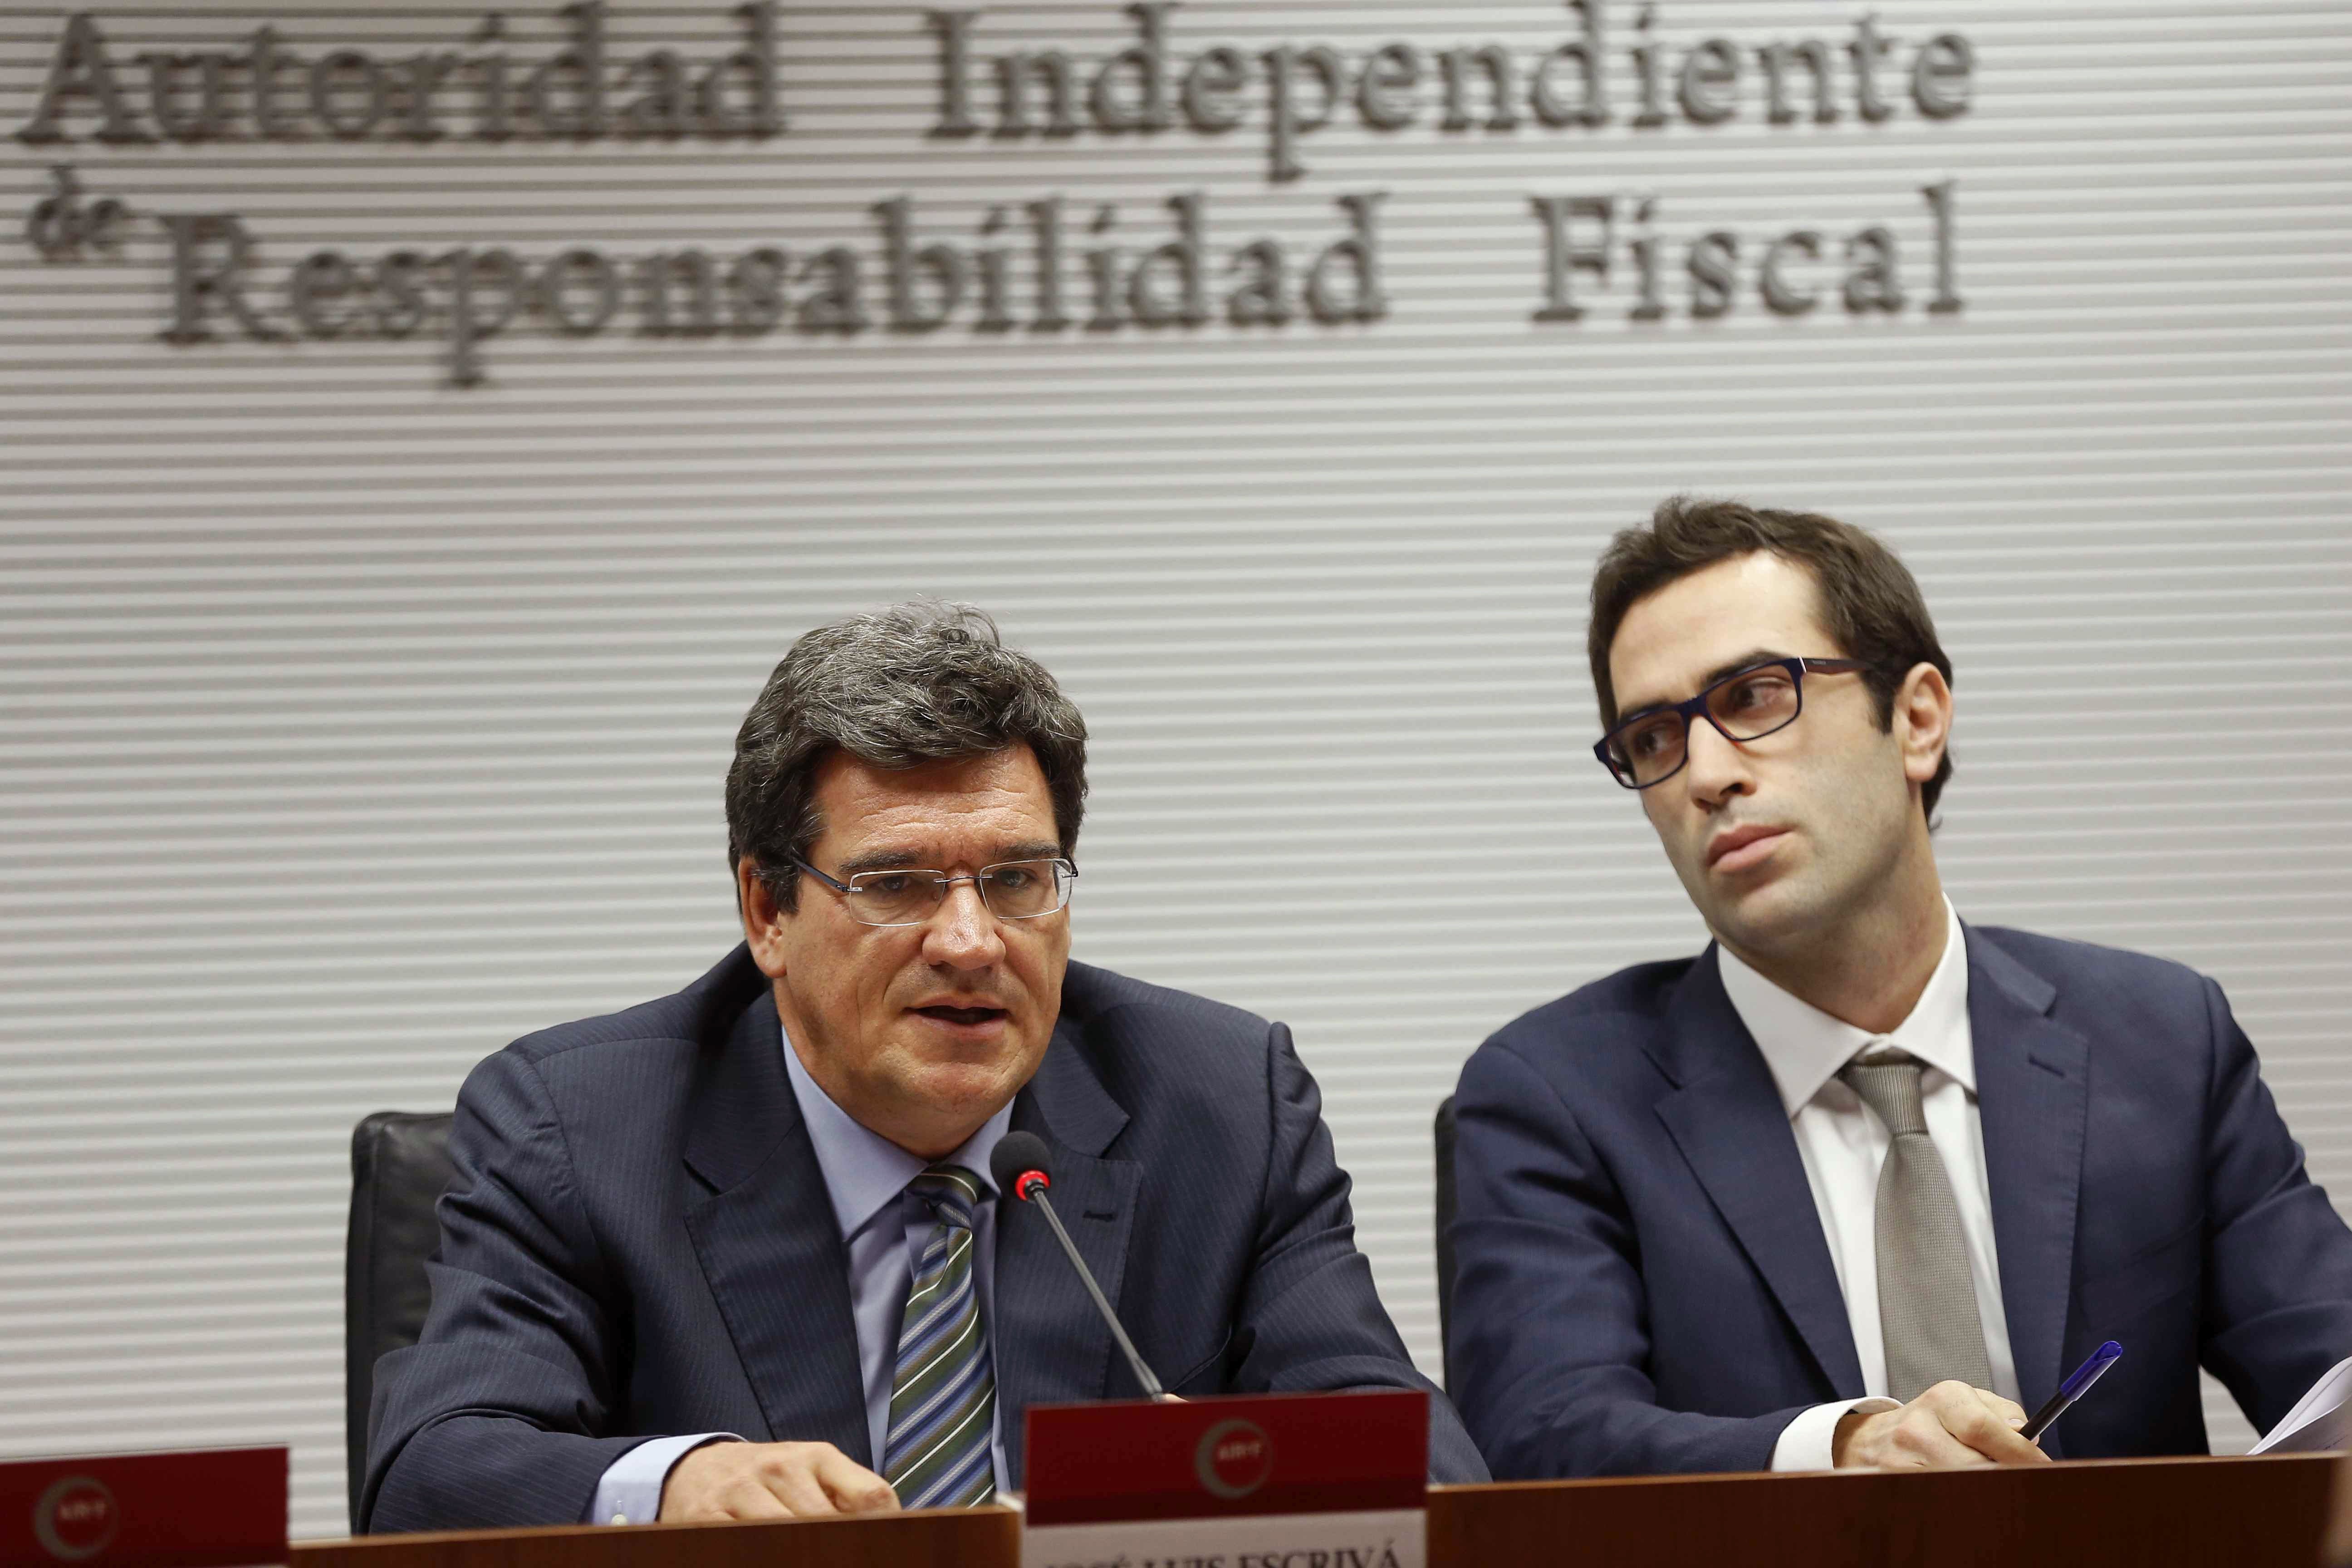 La AIReF calcula en 1.700 millones las pérdidas de las autonomías por la crisis catalana